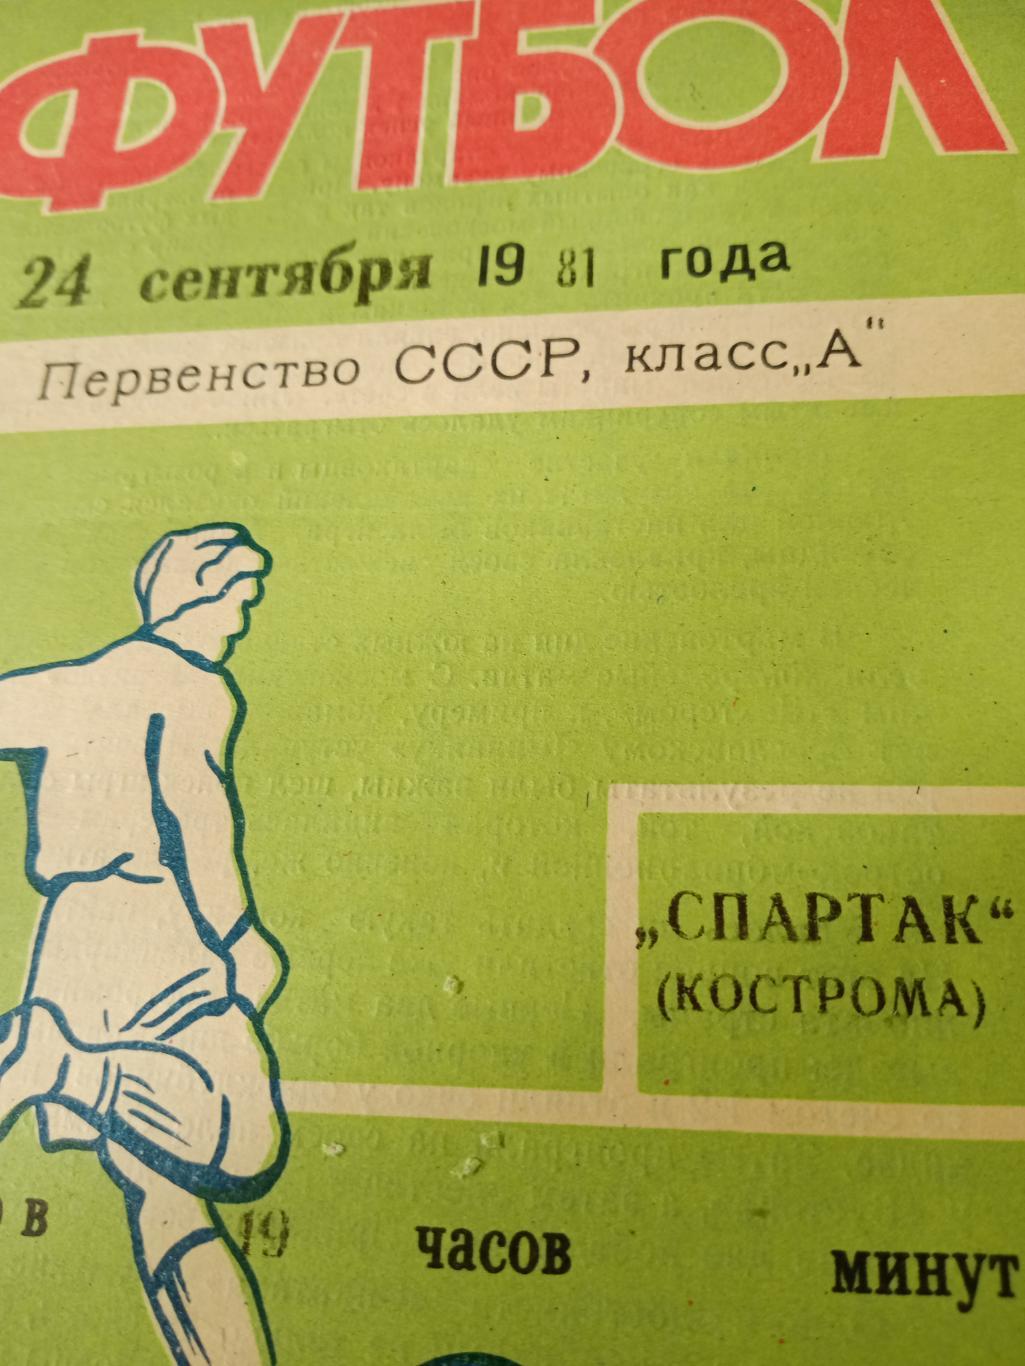 СКА Хабаровск - Спартак Кострома. 24 сентября 1981 год